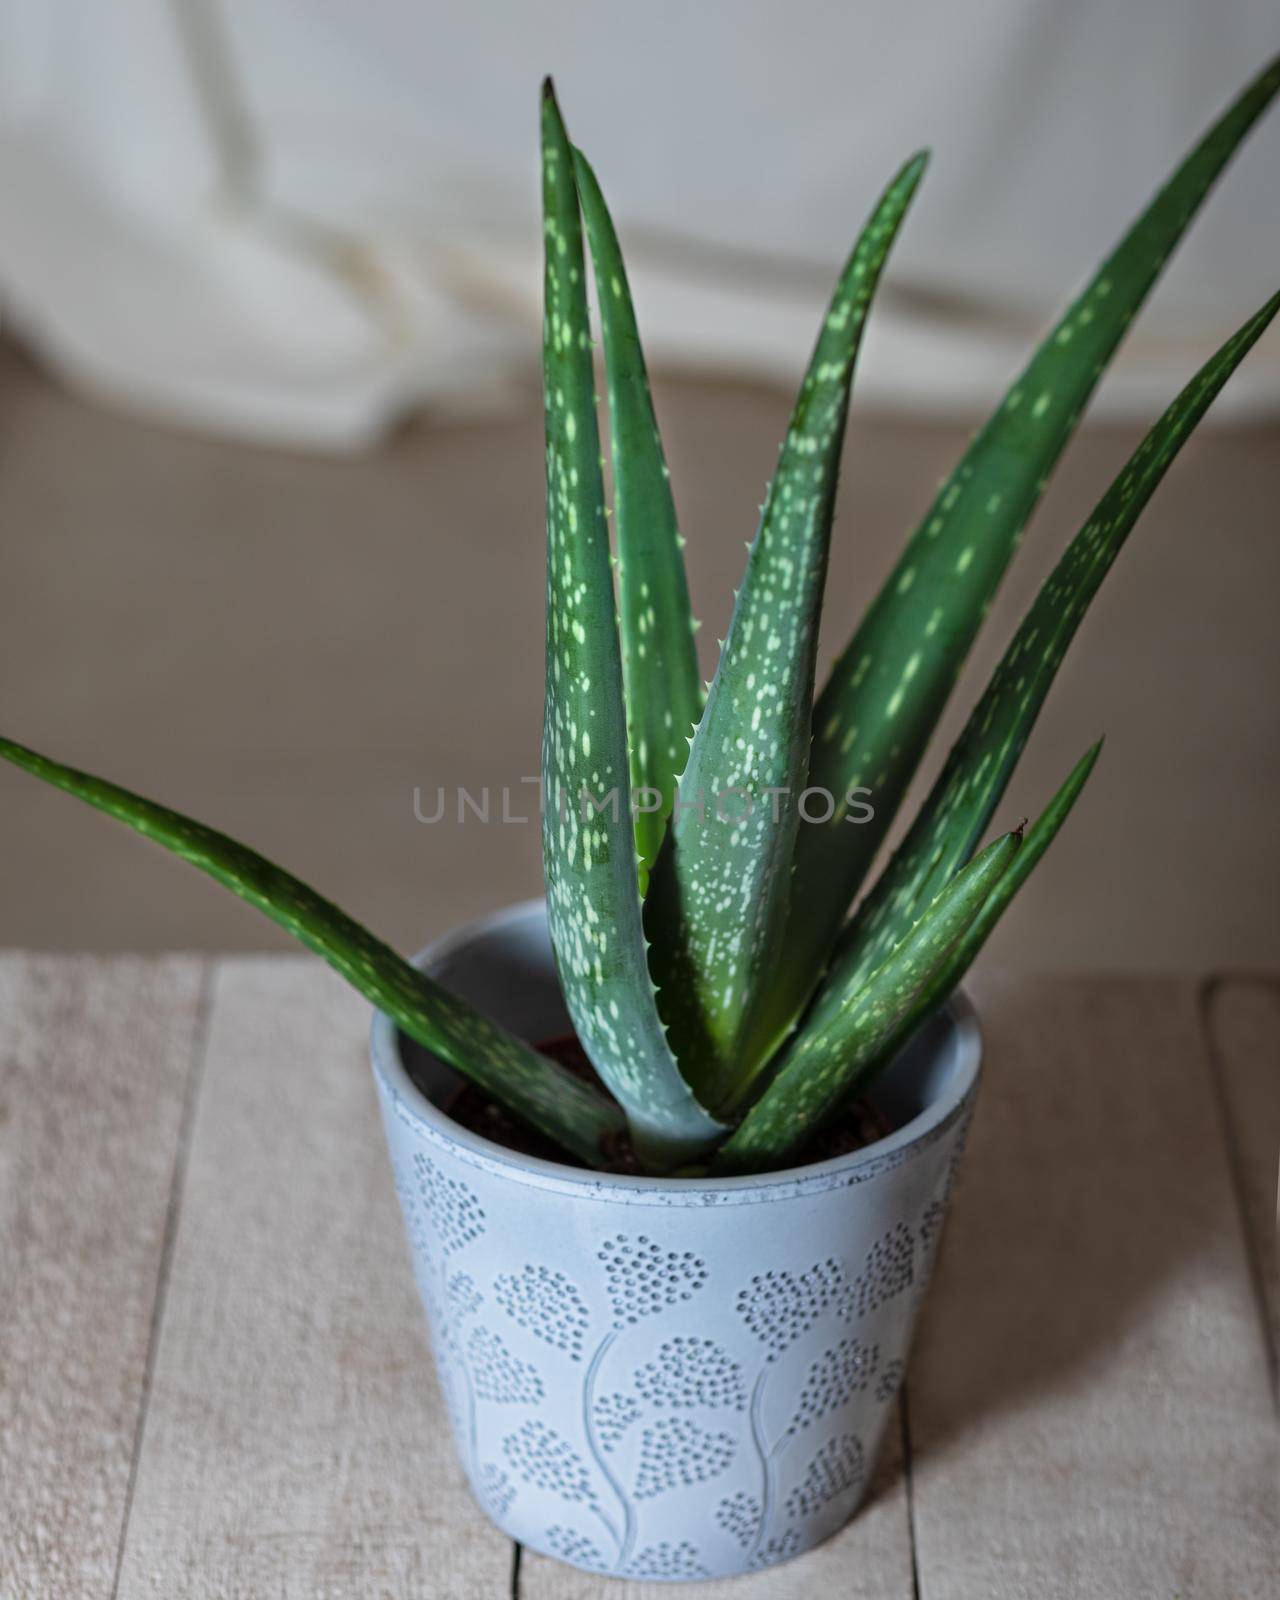 Aloe viridiflora in silver pot